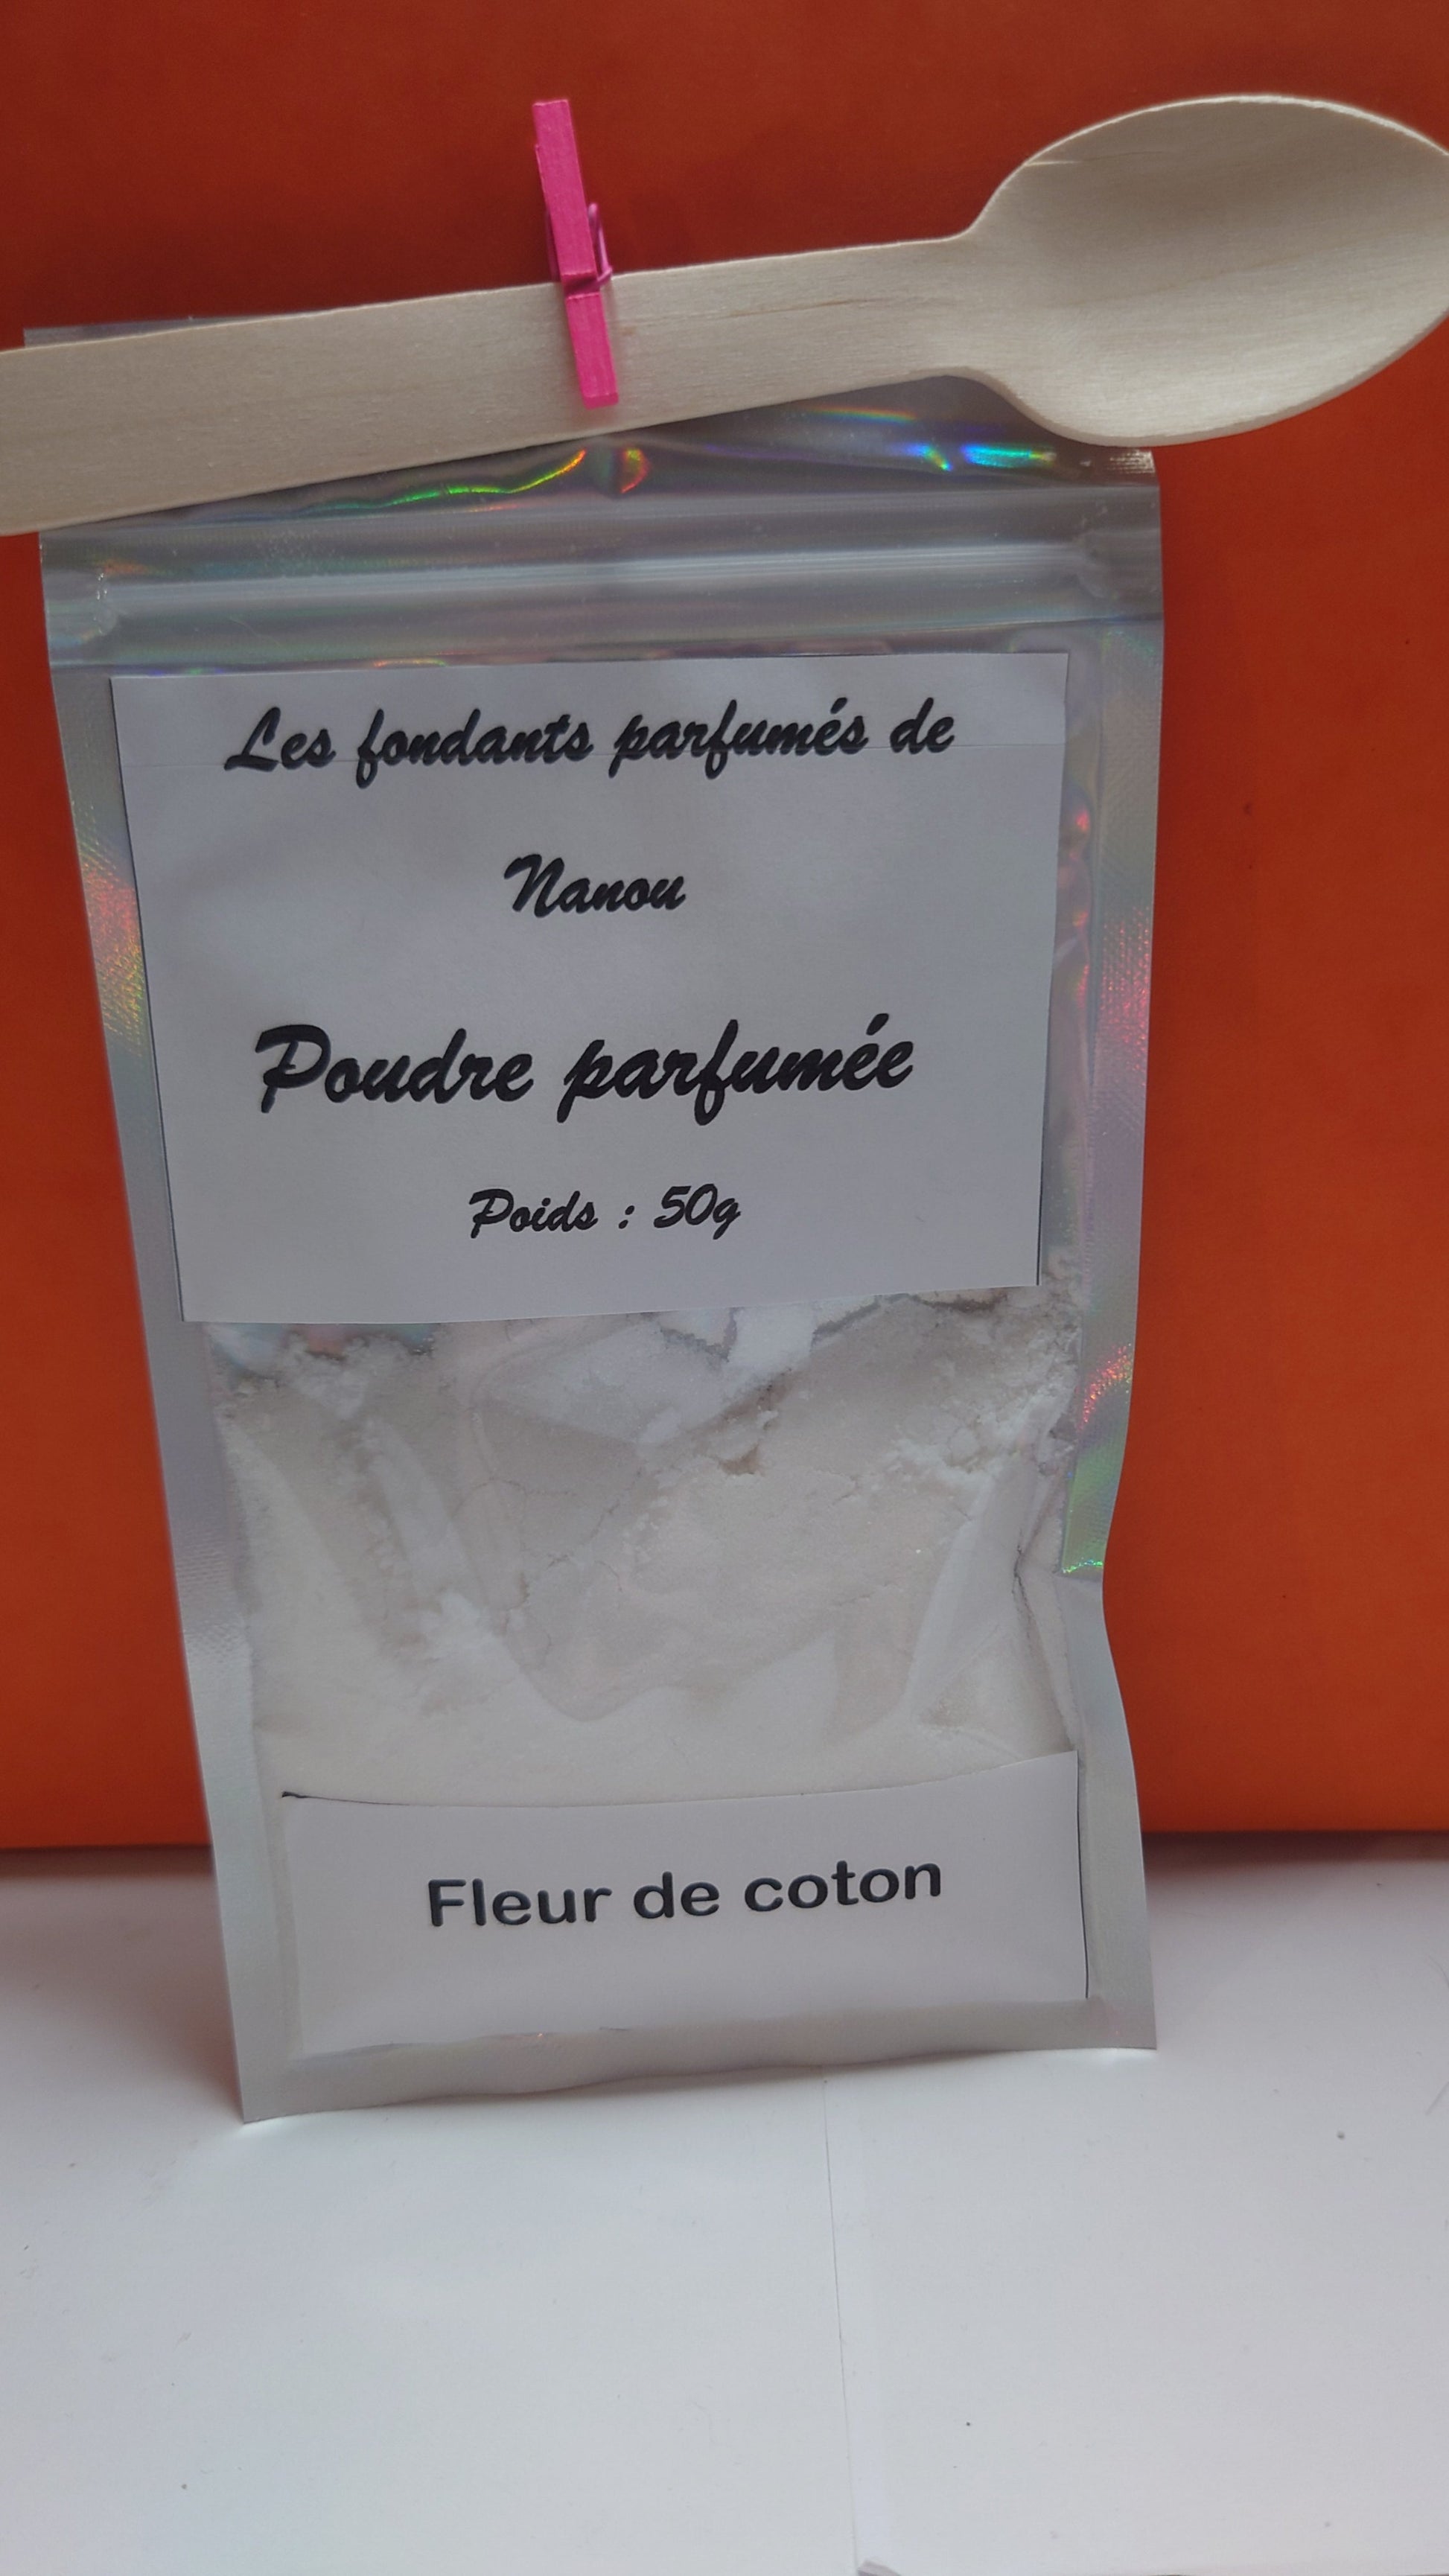 Poudre parfumée pour aspirateur 50g fleur de coton – Les fondants parfumés  de nanou